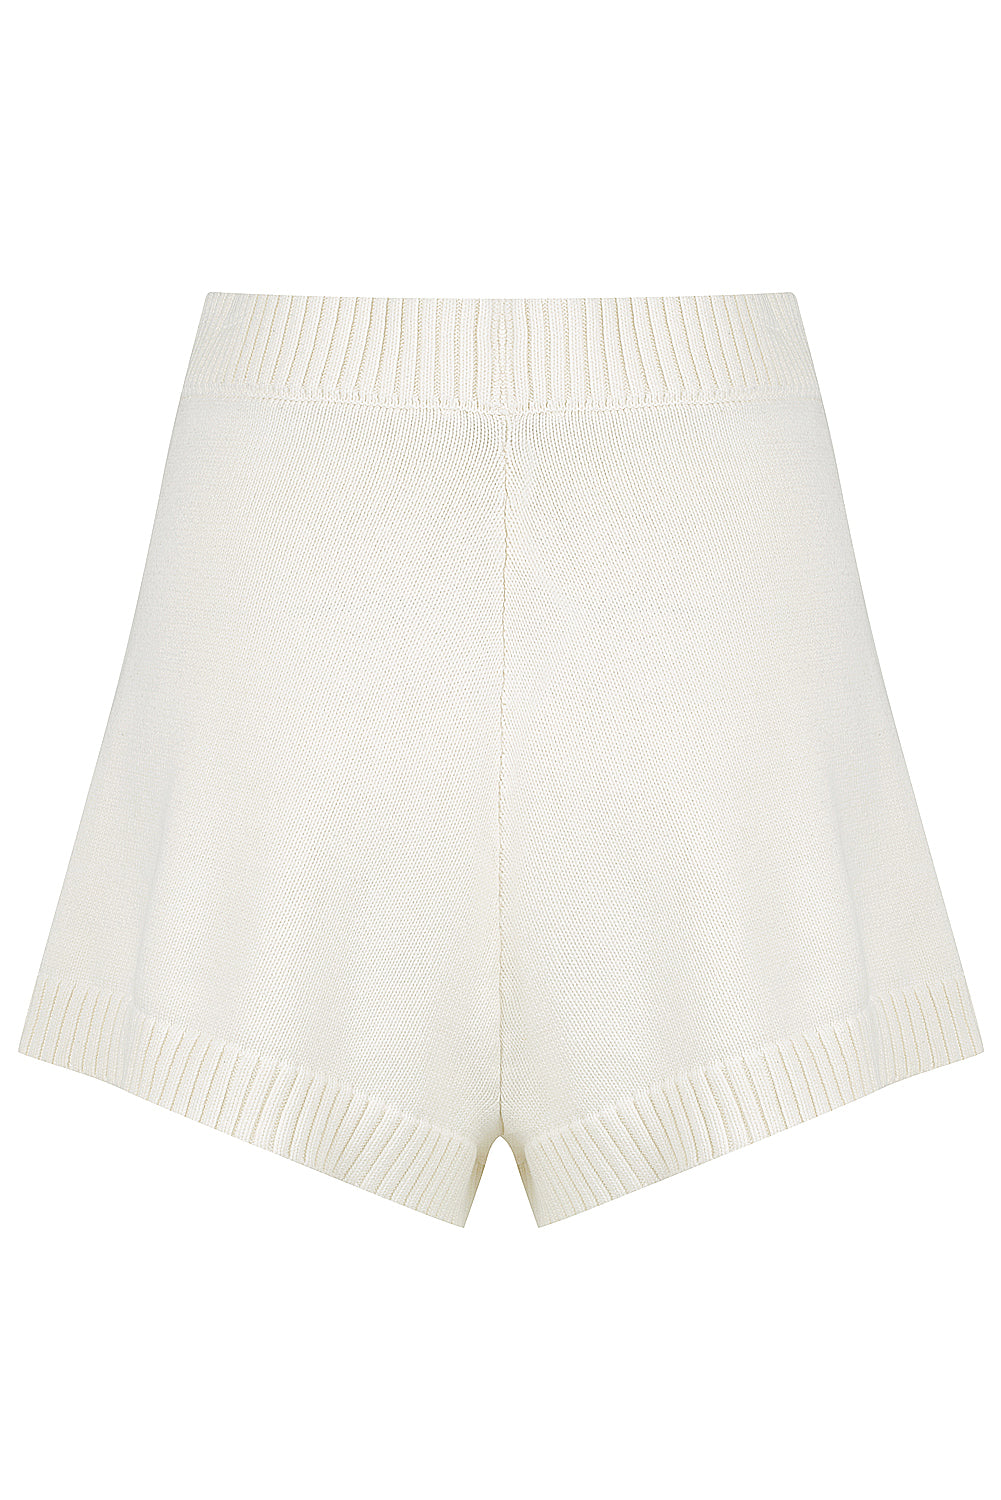 Birubi Knit Shorts